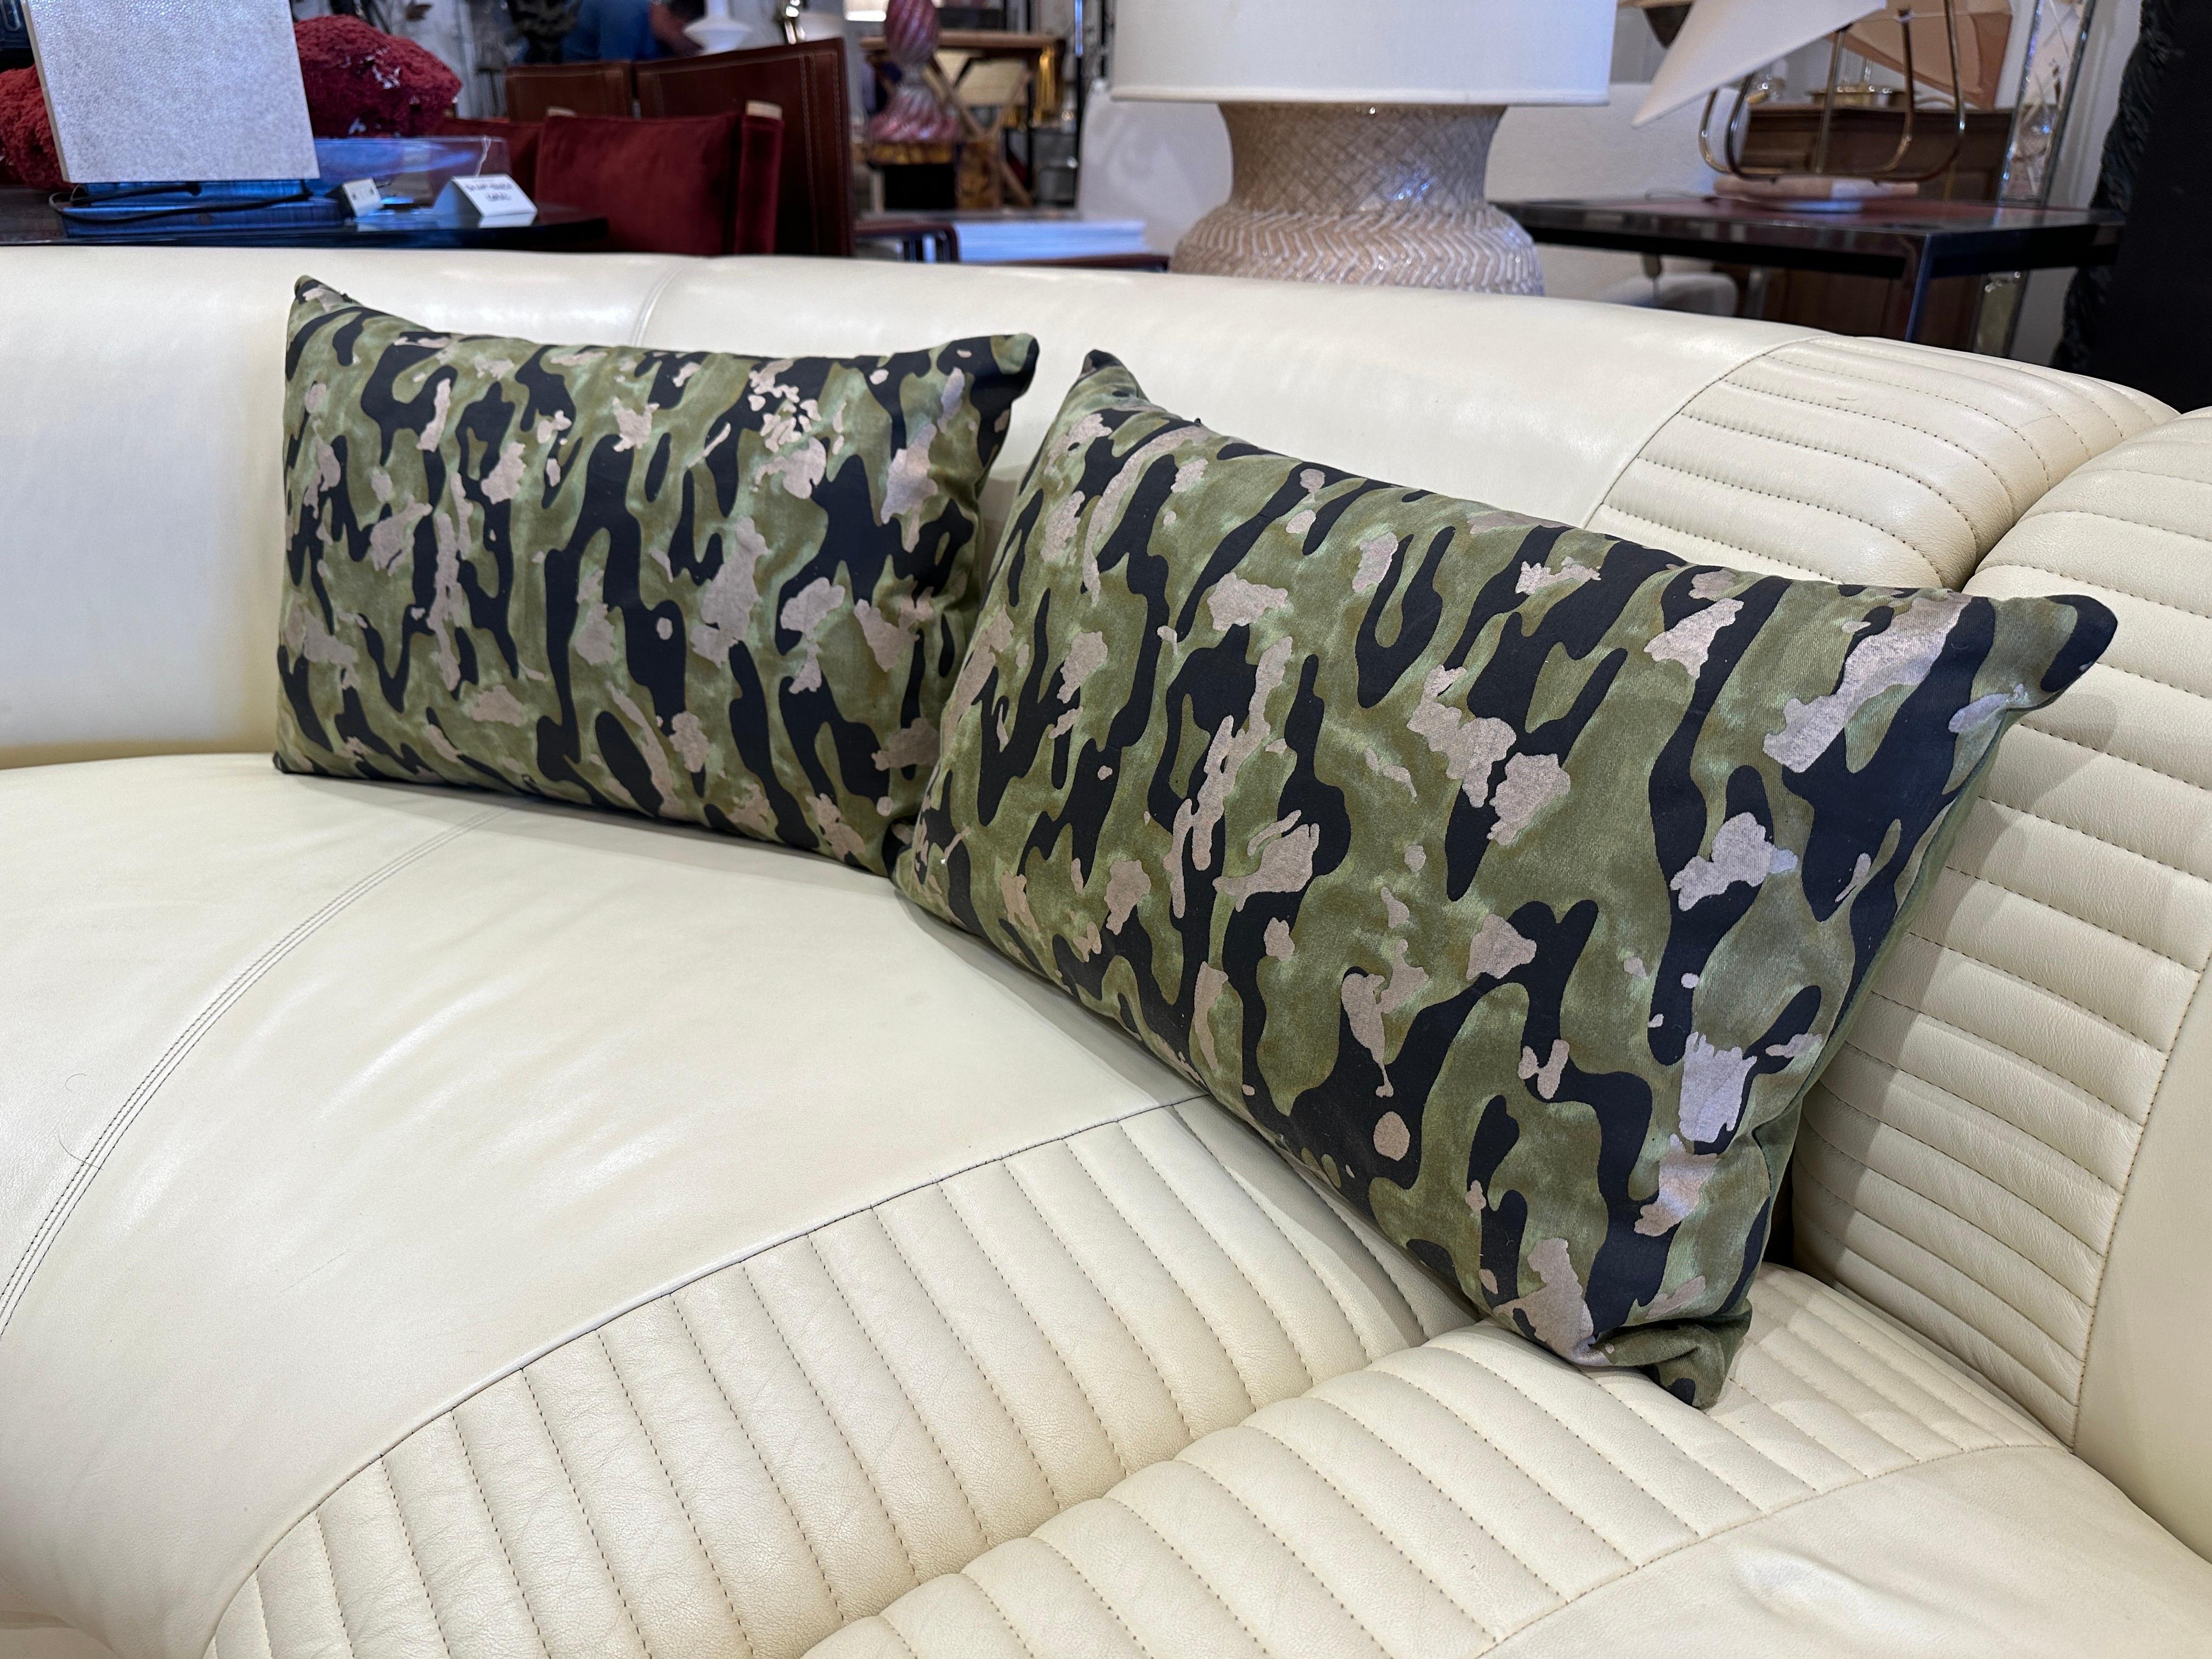 Tissu Camo Isole de l'entreprise Fortuny de Venise, Italie. Ce tissu camouflage à la fois doux et chic est accompagné d'un support de couleur complémentaire. Il s'agit d'un oreiller unique, conçu sur mesure. Il est rempli de duvet. Ce joli coussin